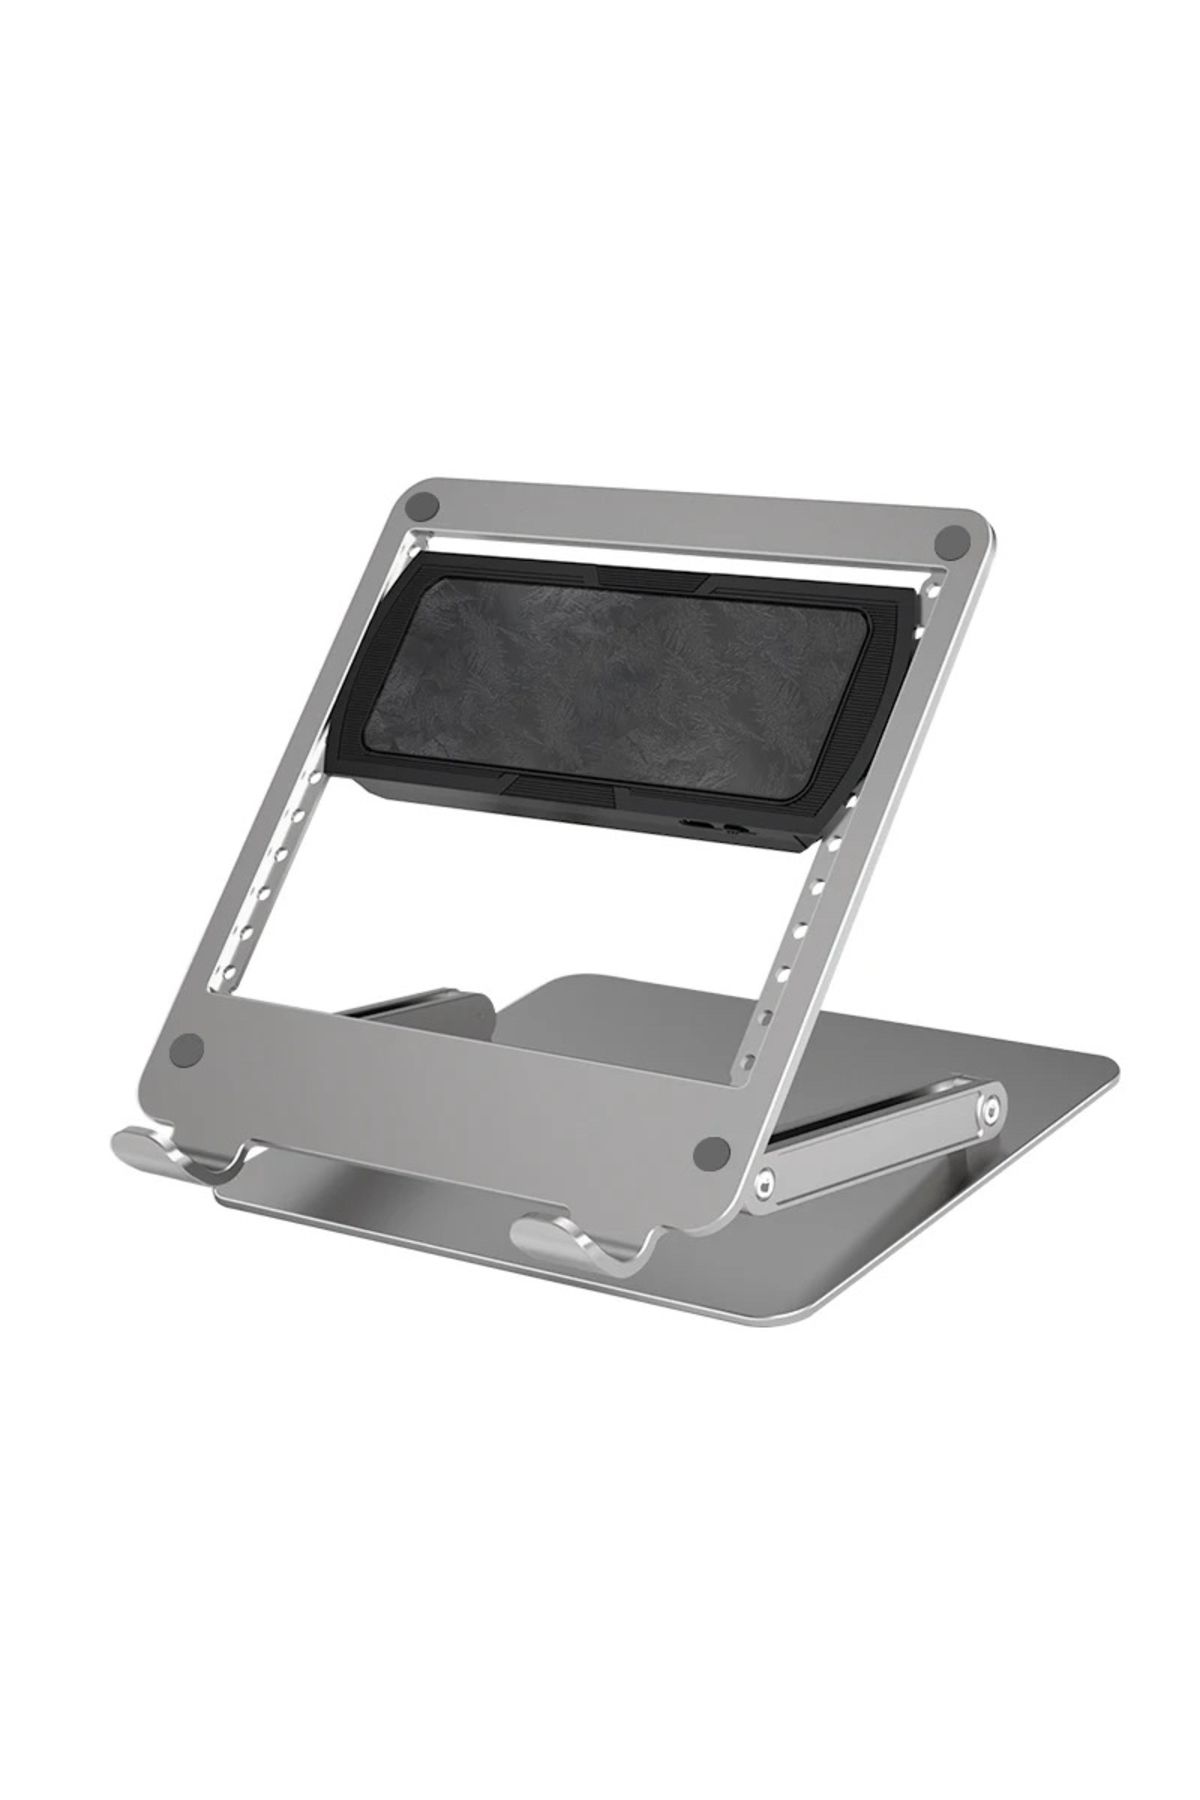 çelikwork inspiring technology Mekanizmalı Çift Fanlı Laptop&tablet Standı Metal Soğutucu Plaka Macbook Standı